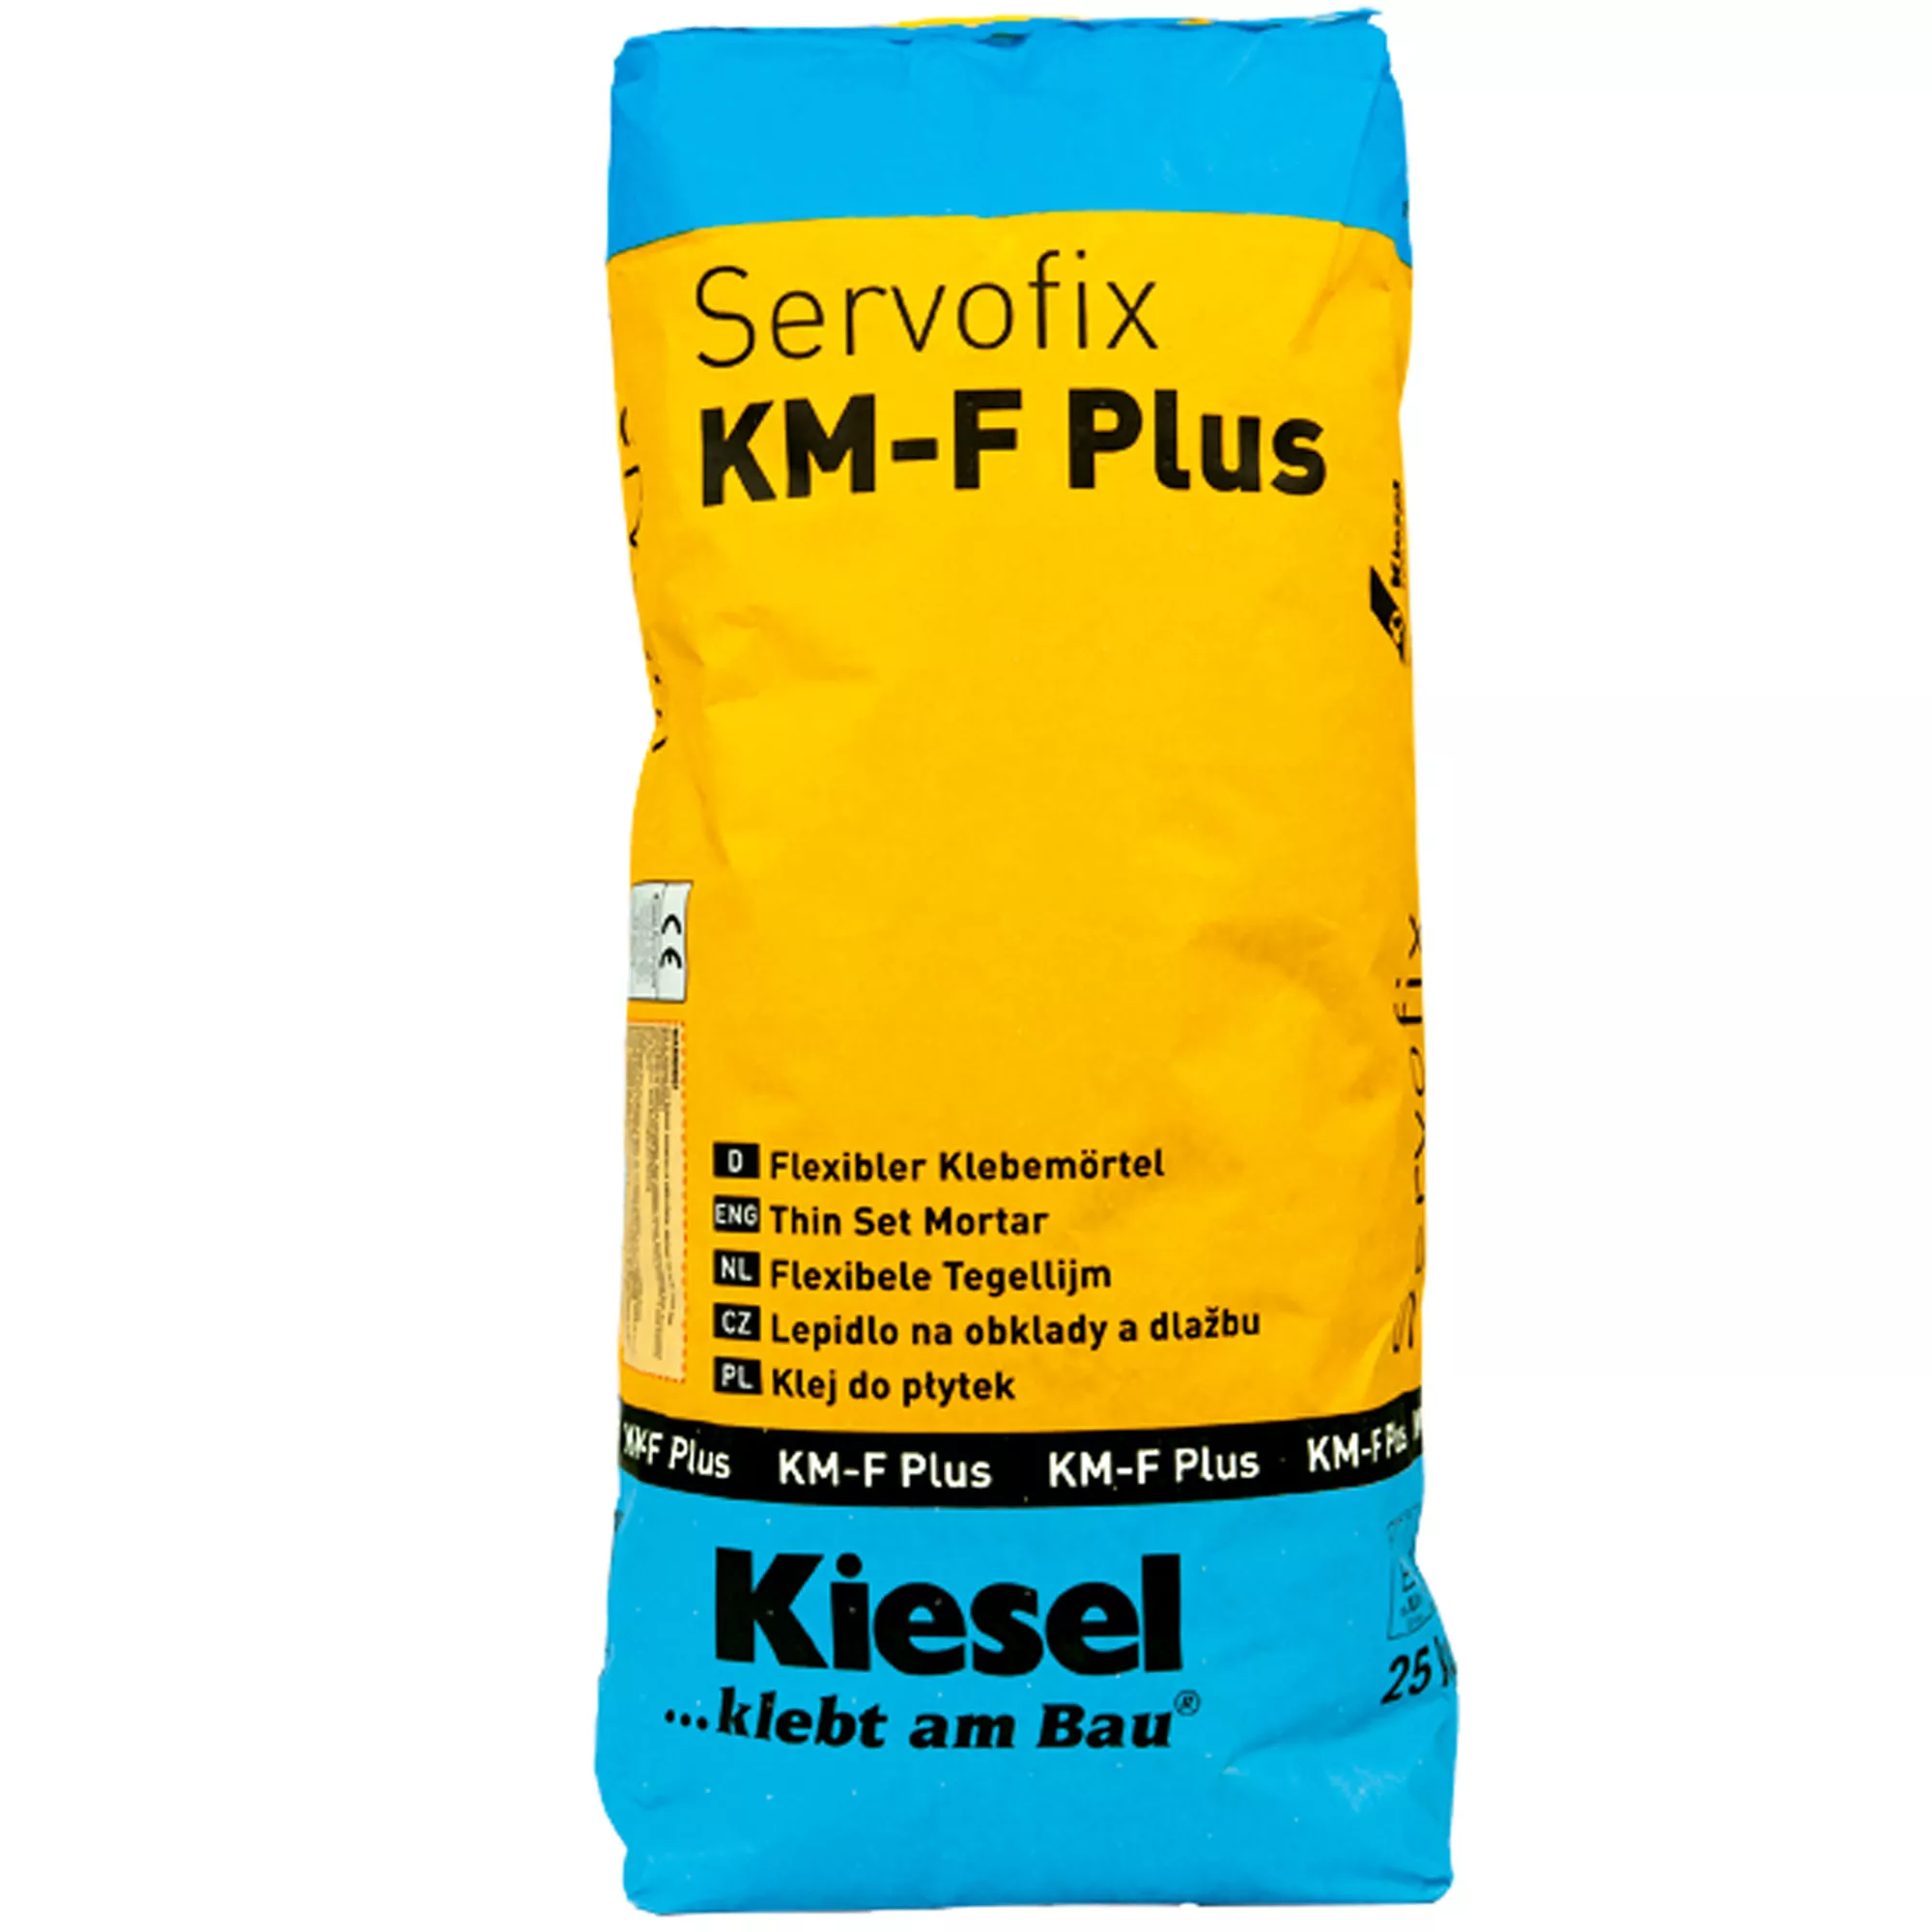 Kiesel klej do płytek Servofix KM-F Plus - elastyczna zaprawa klejąca do gresu szlachetnego, płytek ceramicznych (25KG)